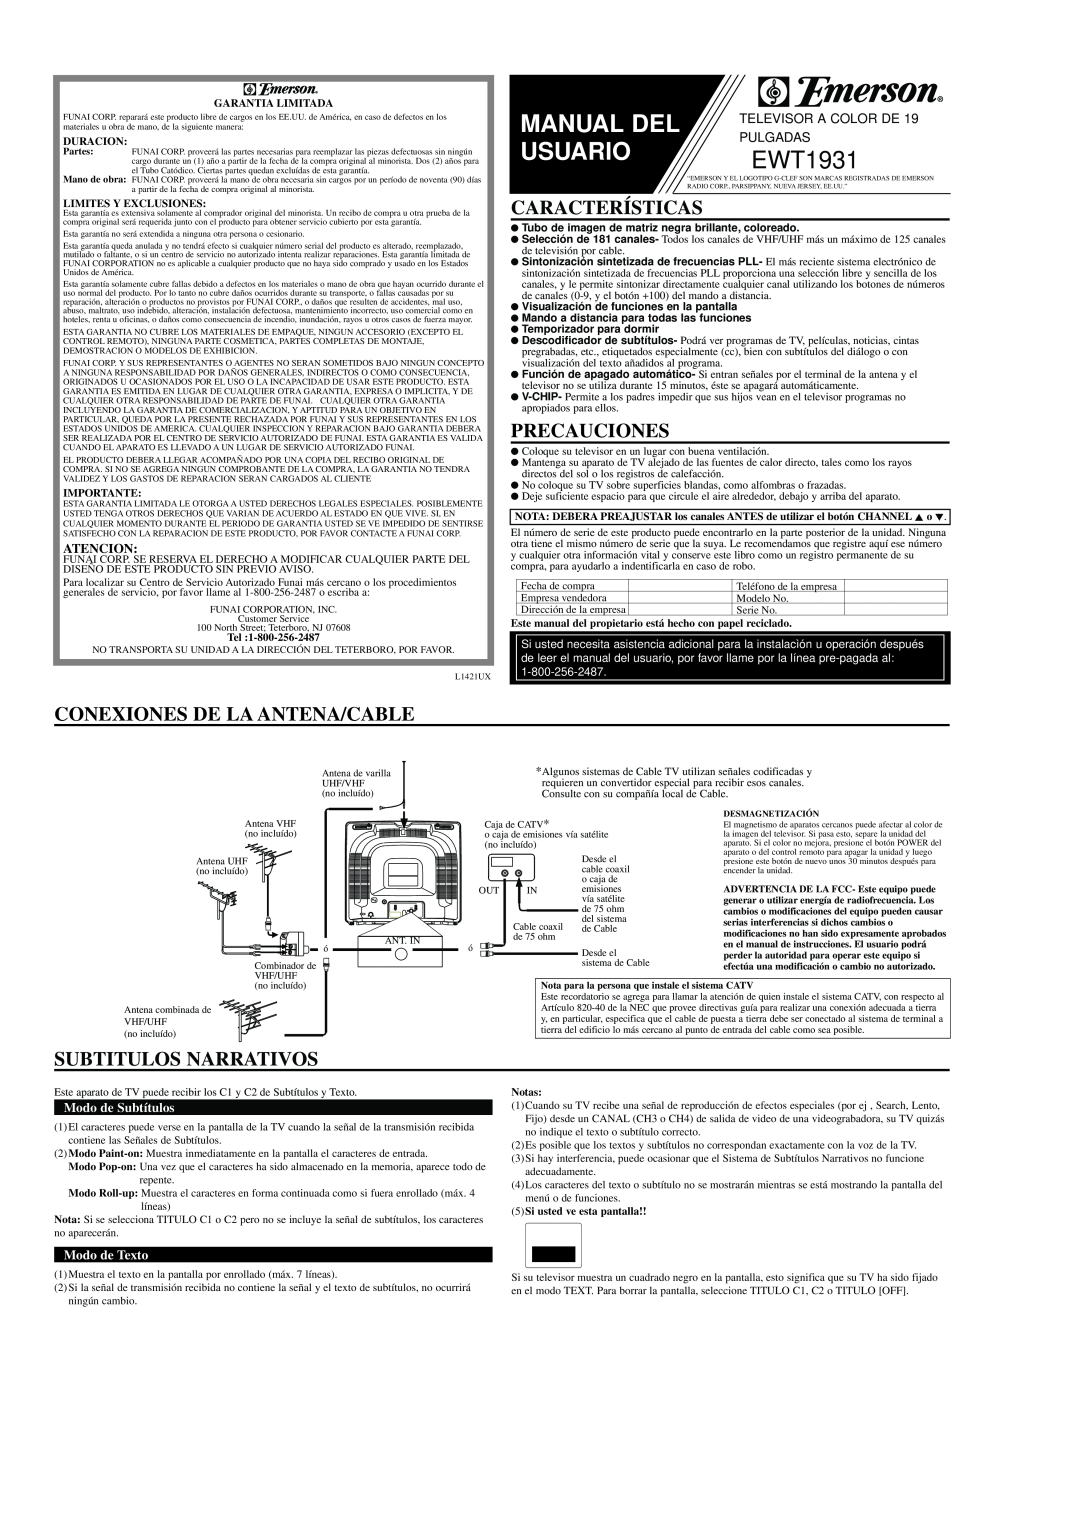 Emerson EWT1931 Características, Precauciones, Conexiones De La Antena/Cable, Subtitulos Narrativos, Atencion, Duracion 